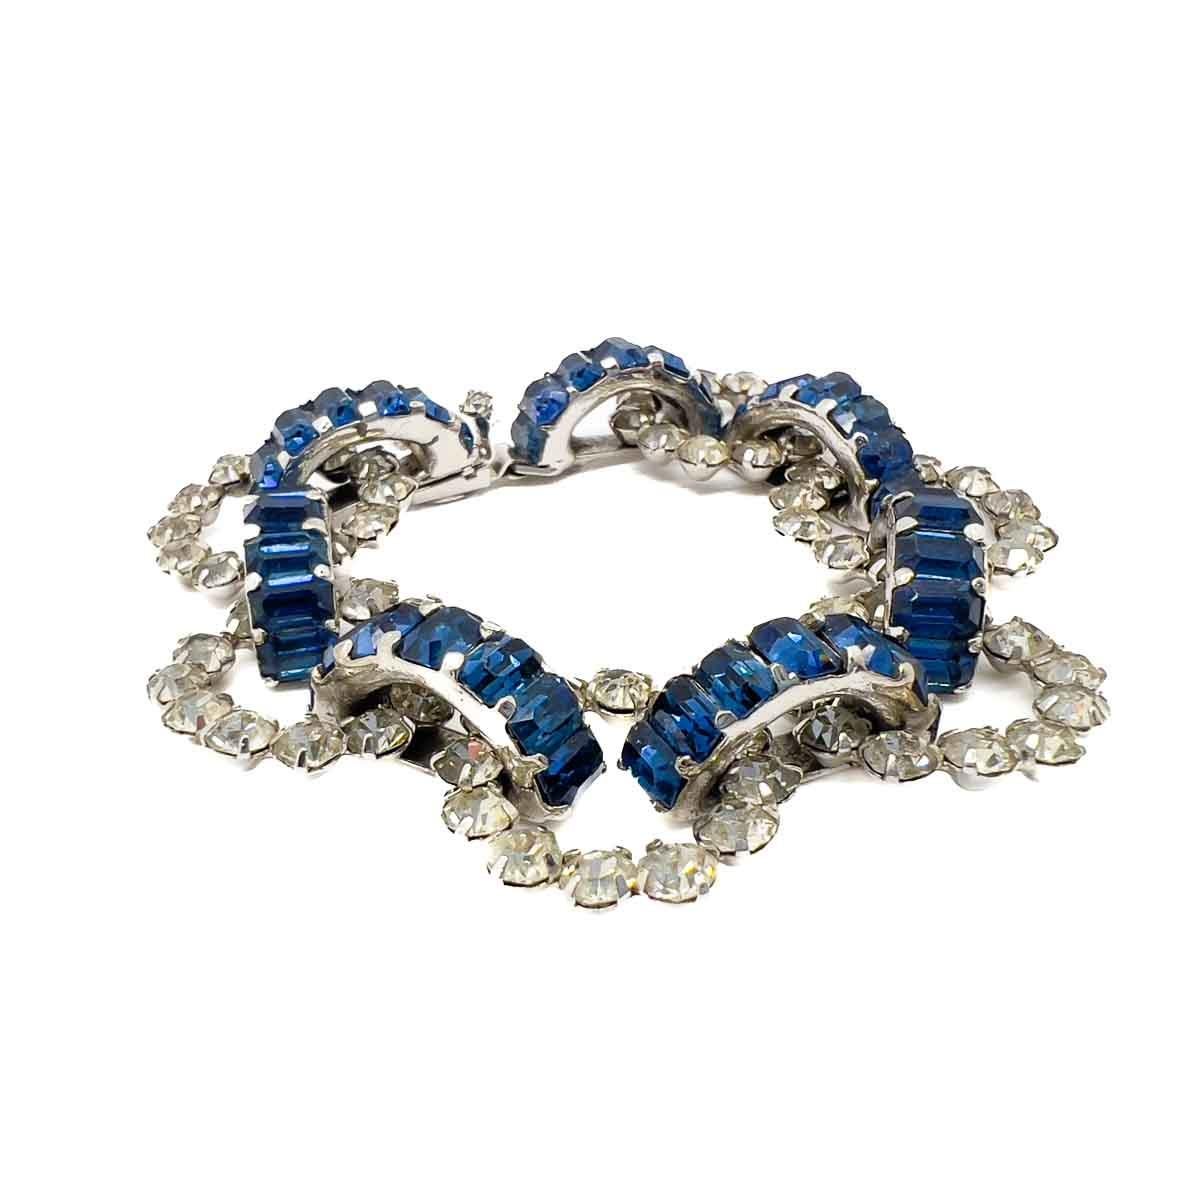 Magnifique bracelet Vintage Dior by Mitchel Maer Sapphire. Illustrant l'importance de la relation entre Mitchel Maer et Christian Dior, ce ravissant bracelet en faux saphir et diamants, orné de cristaux fantaisie de taille émeraude, est